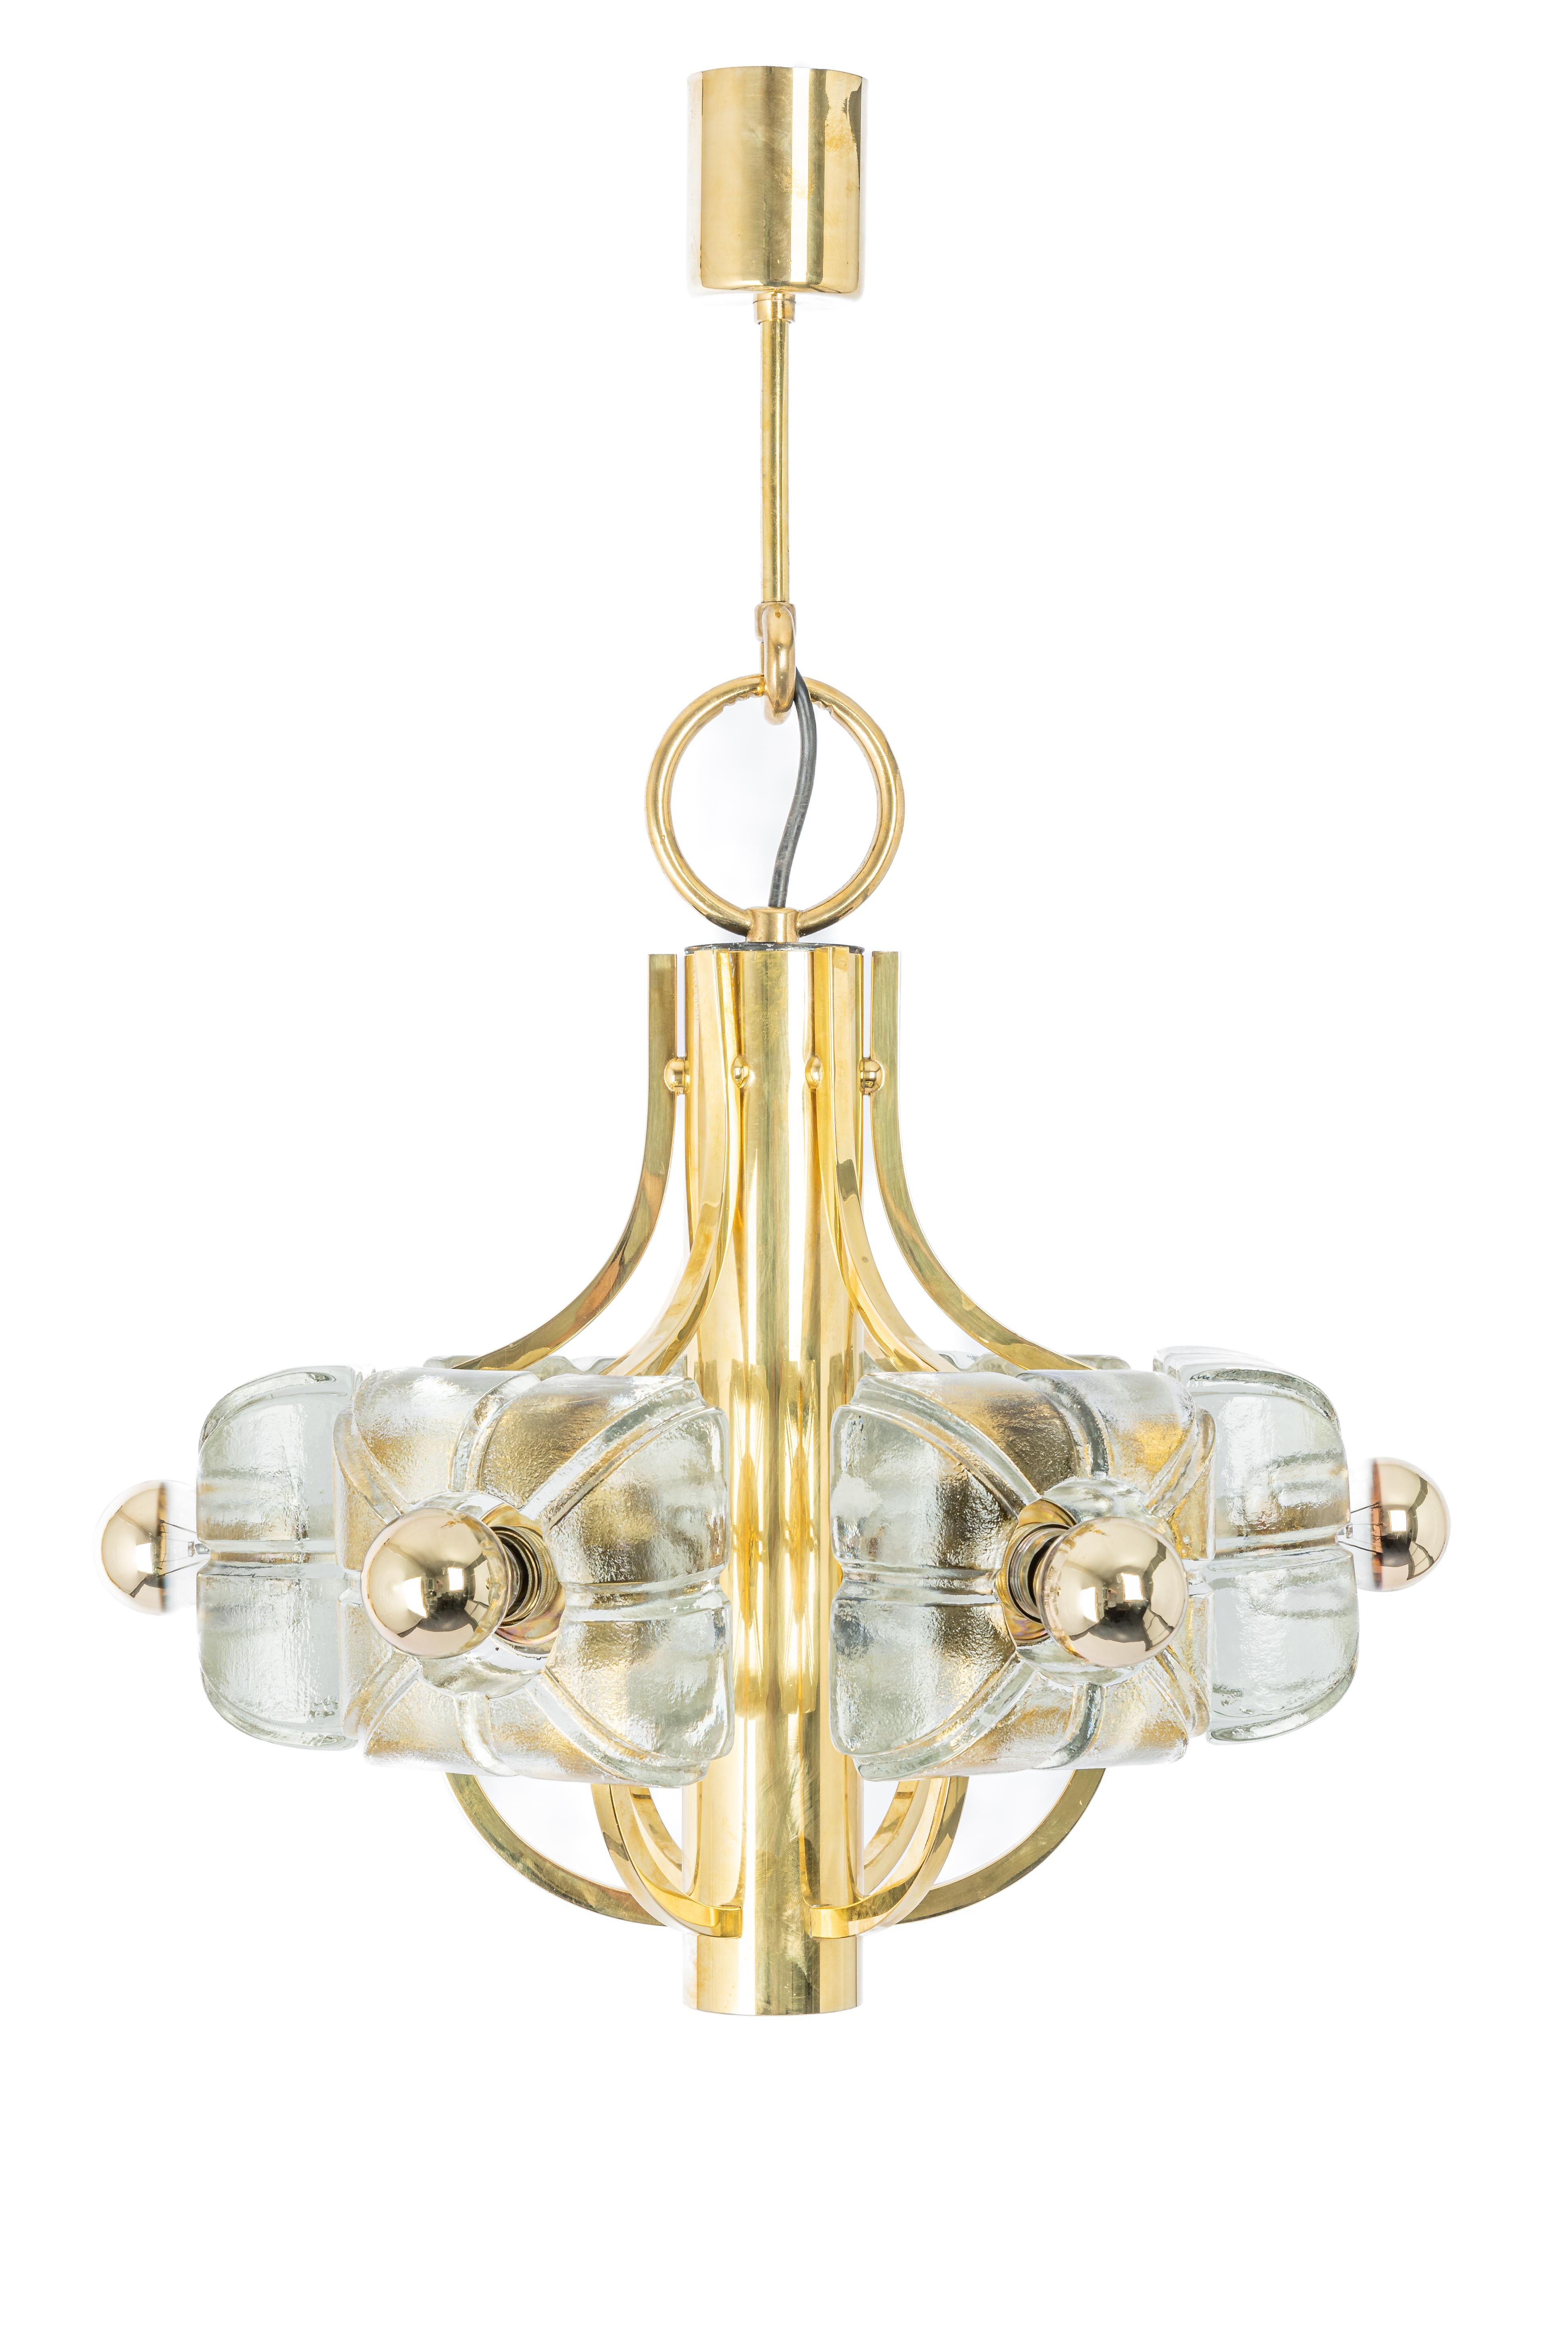 Un merveilleux grand lustre/pendentif doré de haute qualité de Sische, Allemagne, années 1970

Il est composé d'un cadre en laiton décoré de 6 verres en cristal.
La lampe peut accueillir 6 ampoules à petit culot (max. 40W par ampoule).
Les